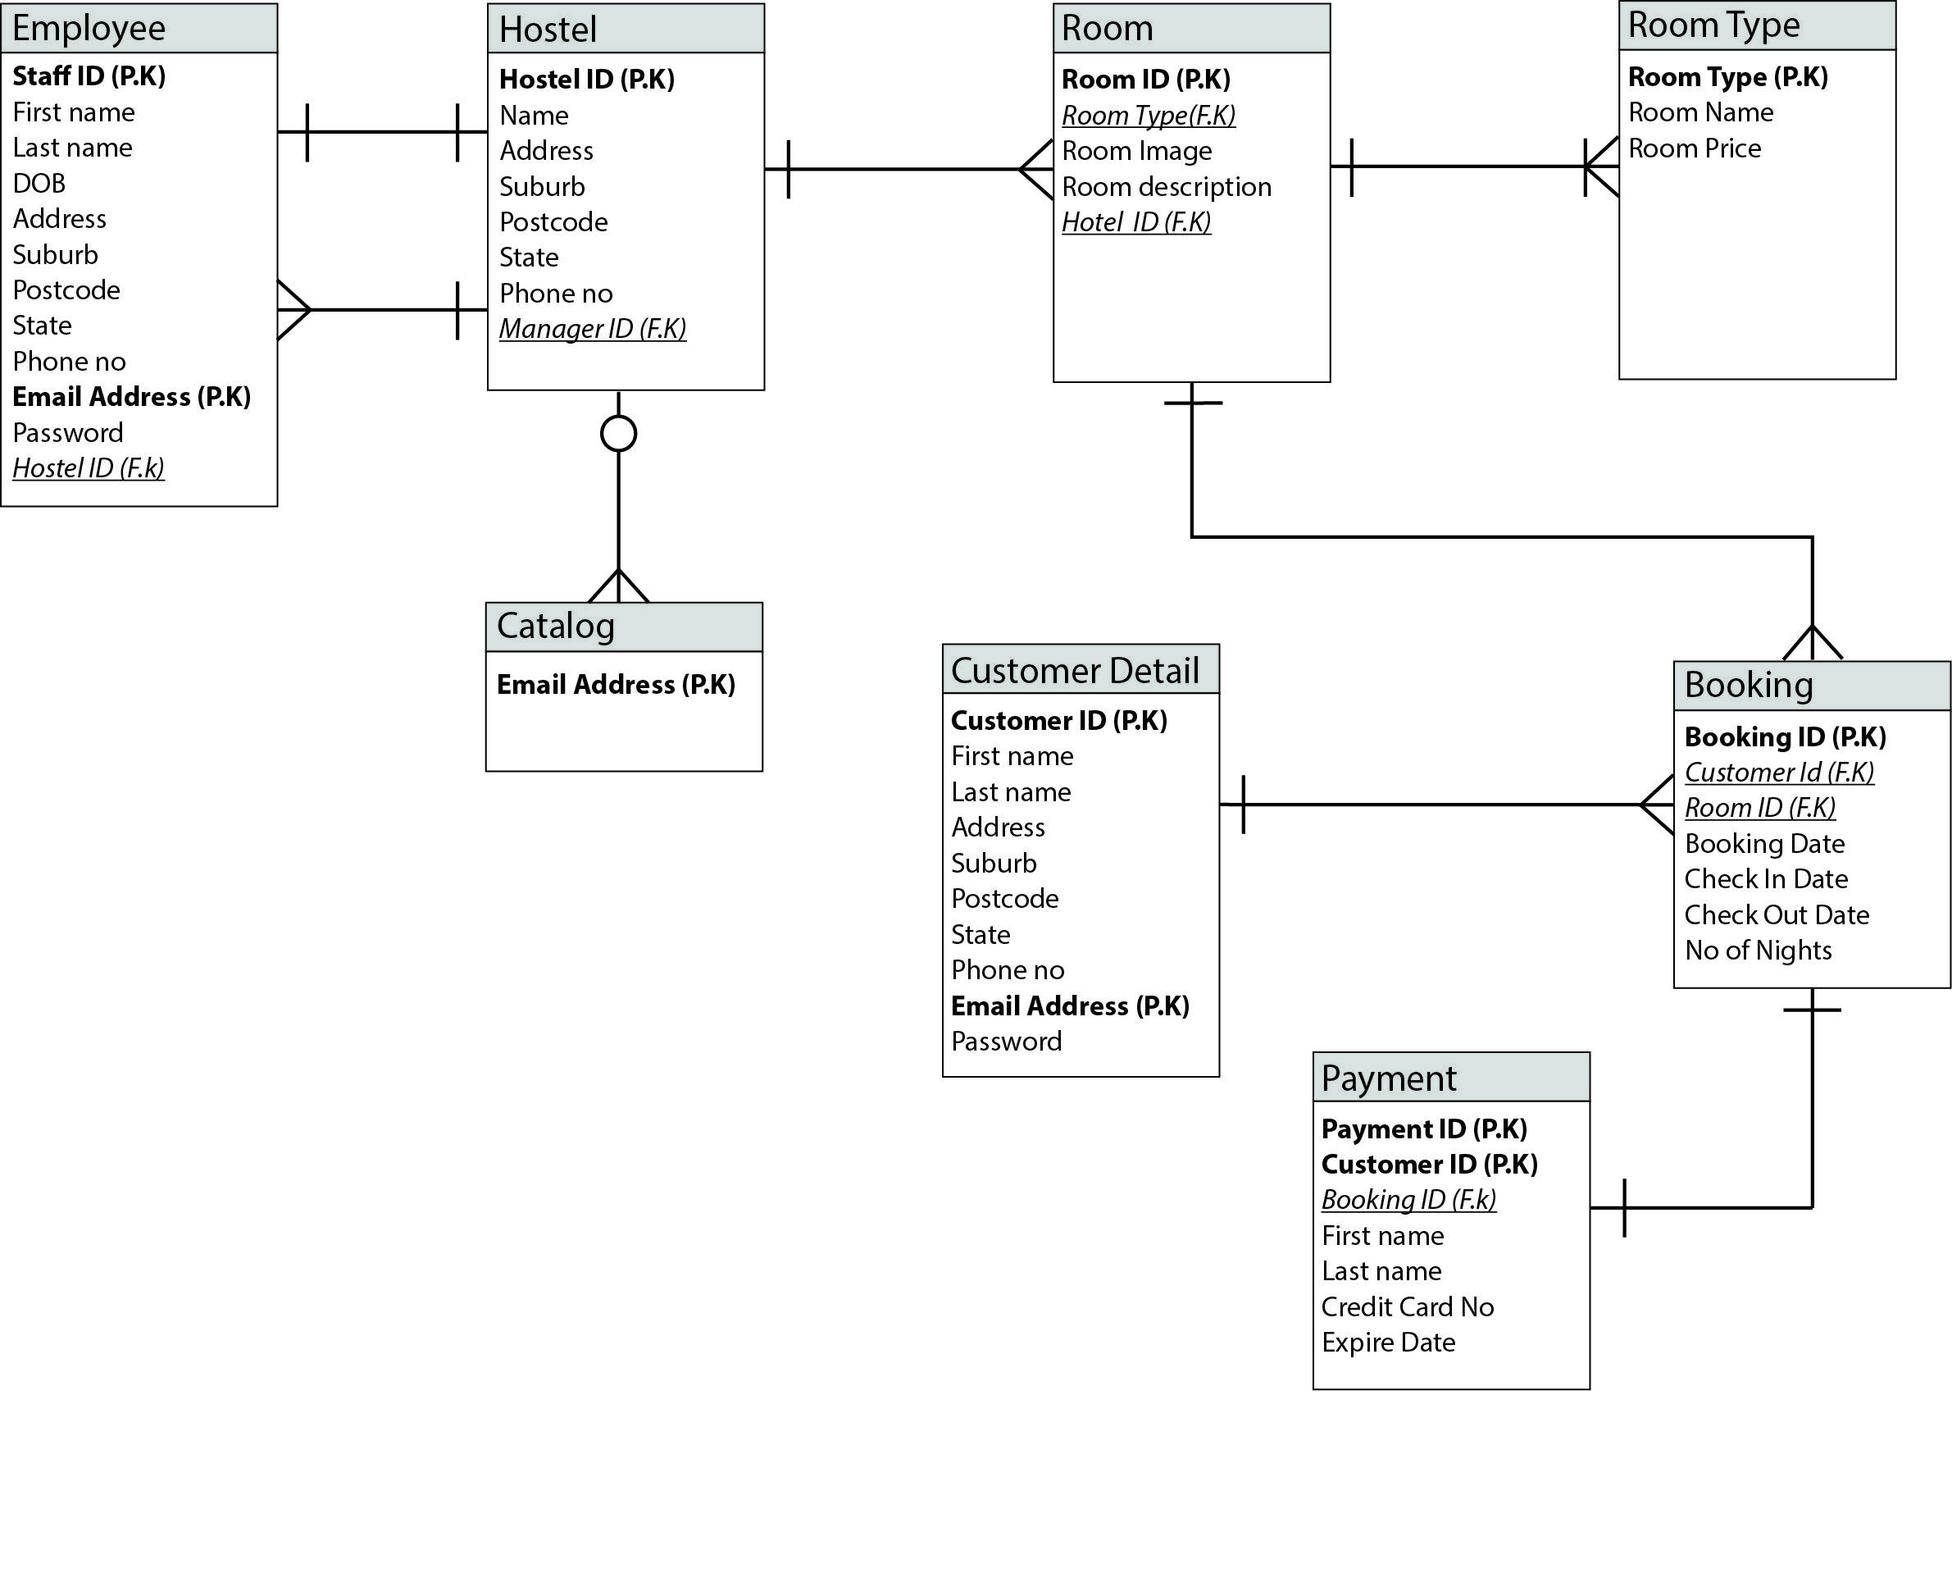 Online Hostel Management System Er Diagram - Database in Er Diagramm Online